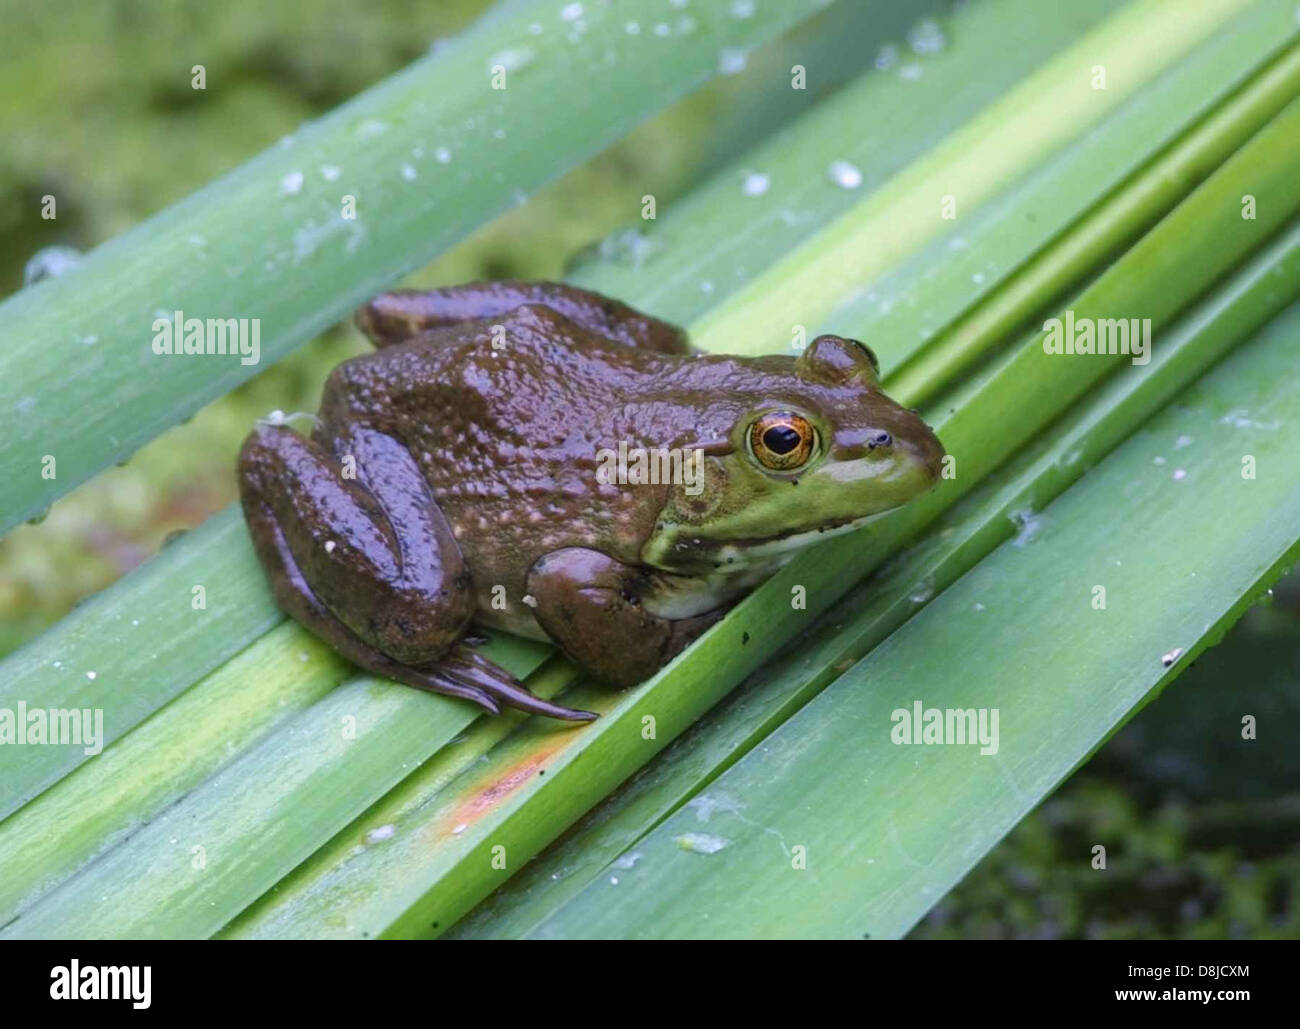 Lithobates catesbeianus bullfrog amphibian. Stock Photo